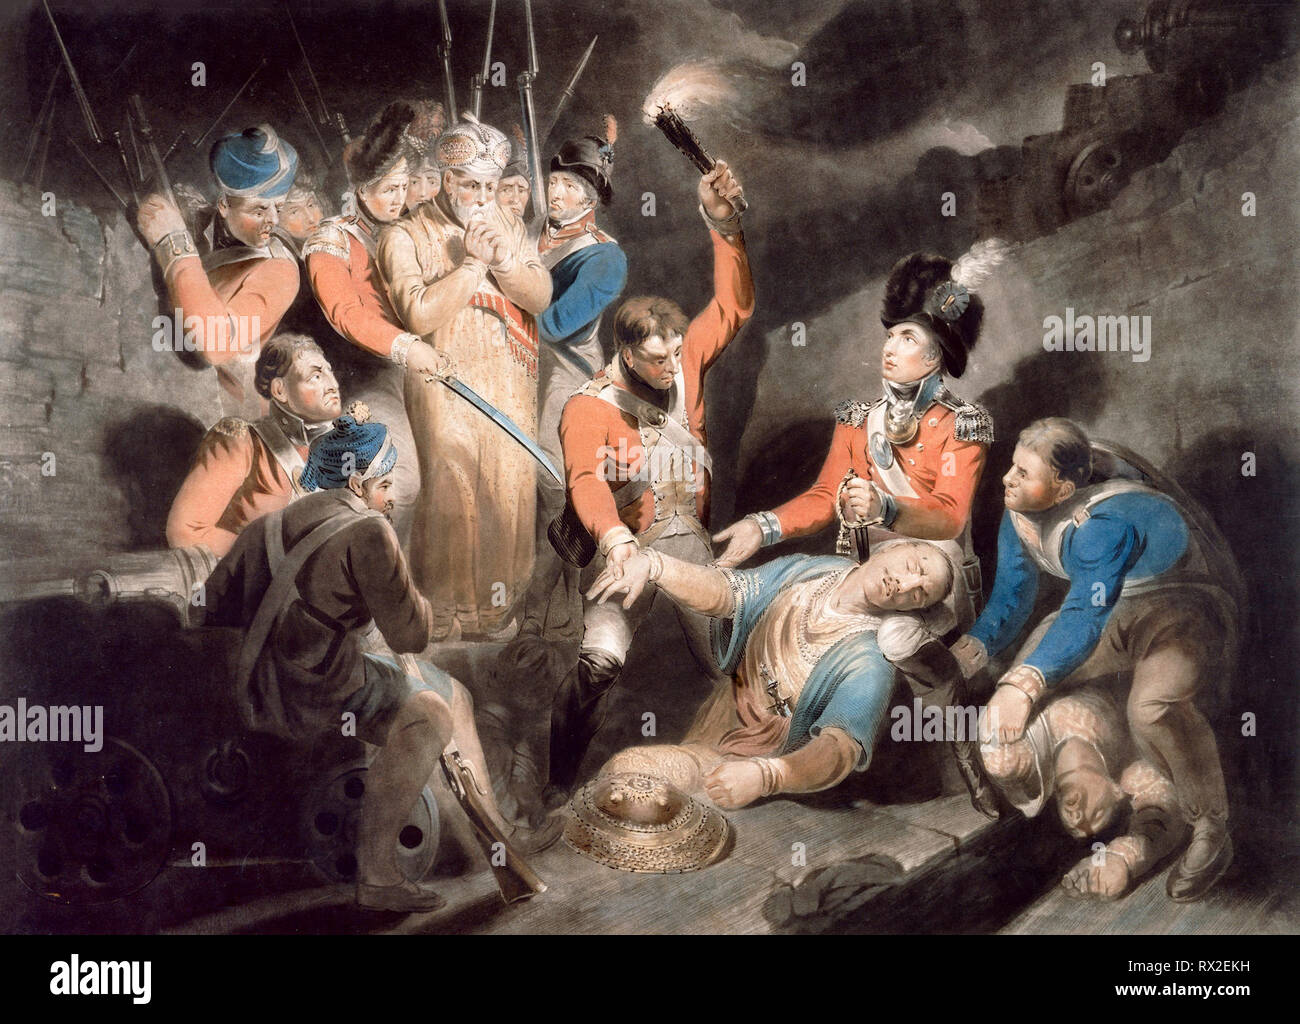 Trovare il corpo di Tipu - Trovare il corpo di Tippoo sultano. Incisione colorata. Samuel William Reynolds, 1800 Foto Stock